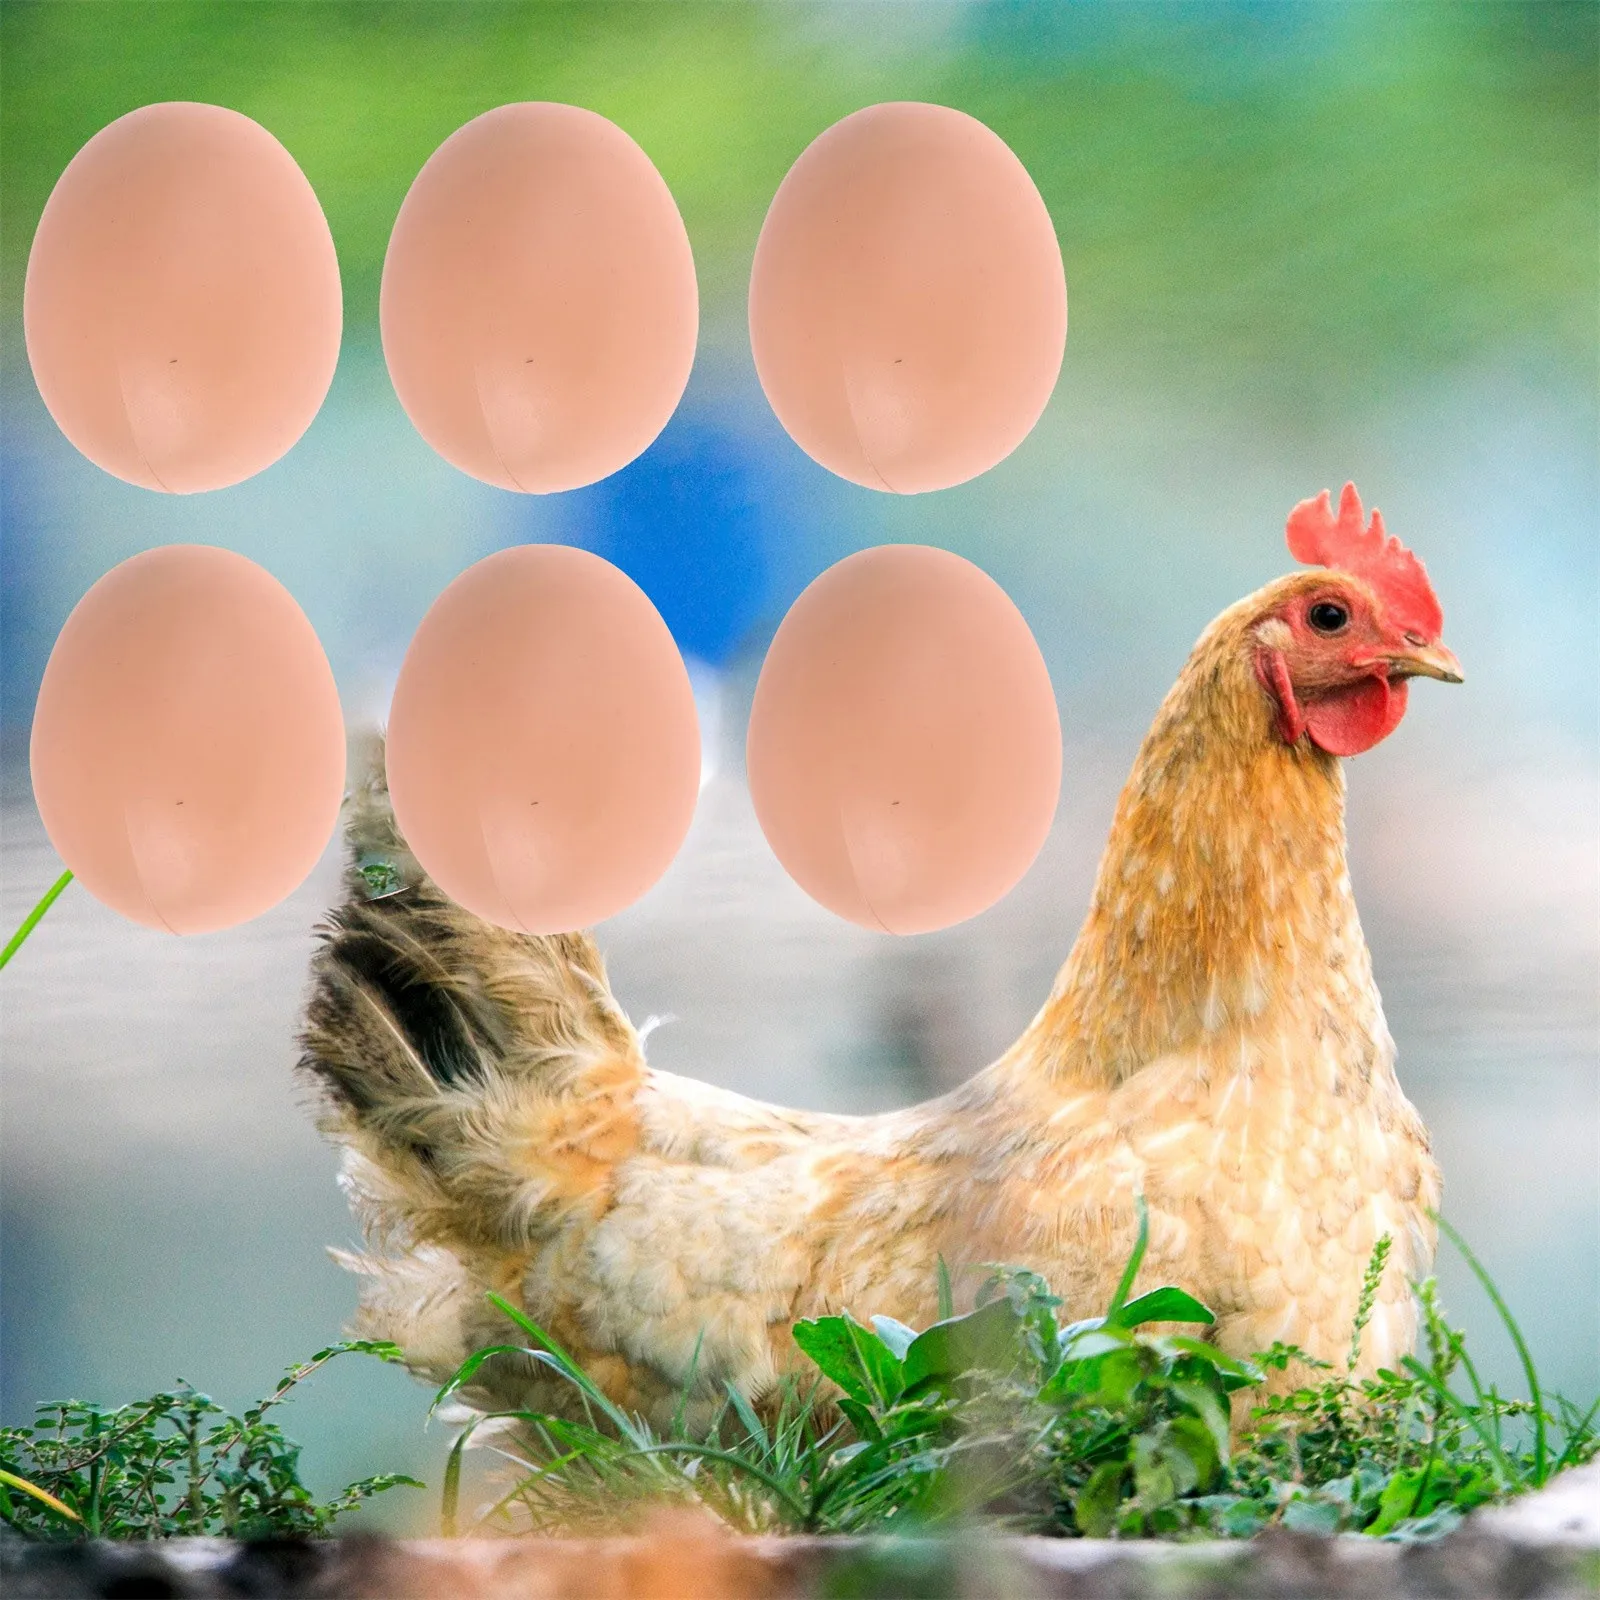 Недорогие искусственные деревянные курицы окрашенные яйца детские развивающие